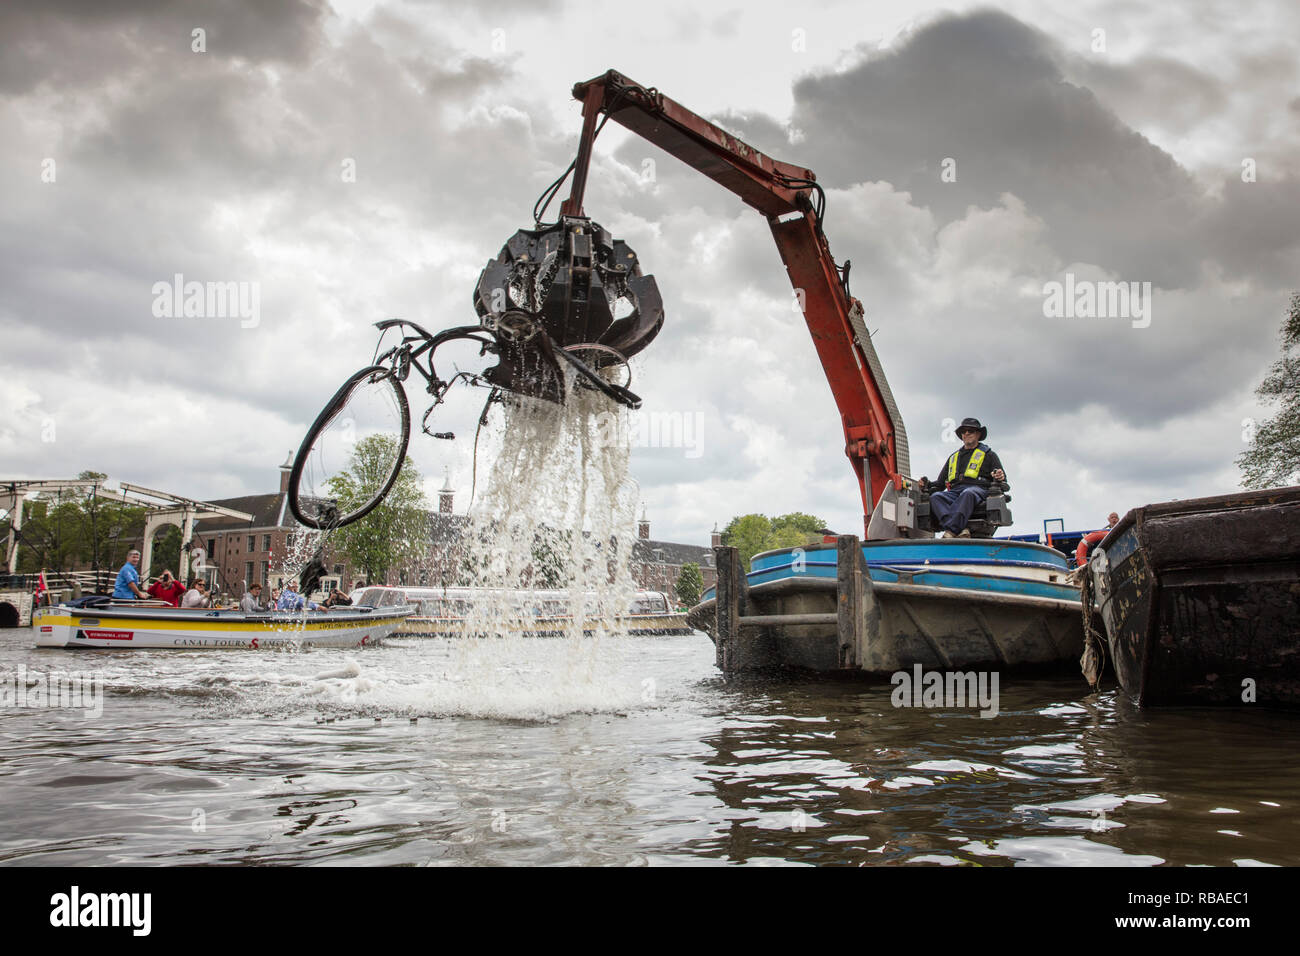 Les Pays-Bas, Amsterdam, de vieux vélos abandonnés dans la rivière Amstel. Banque D'Images